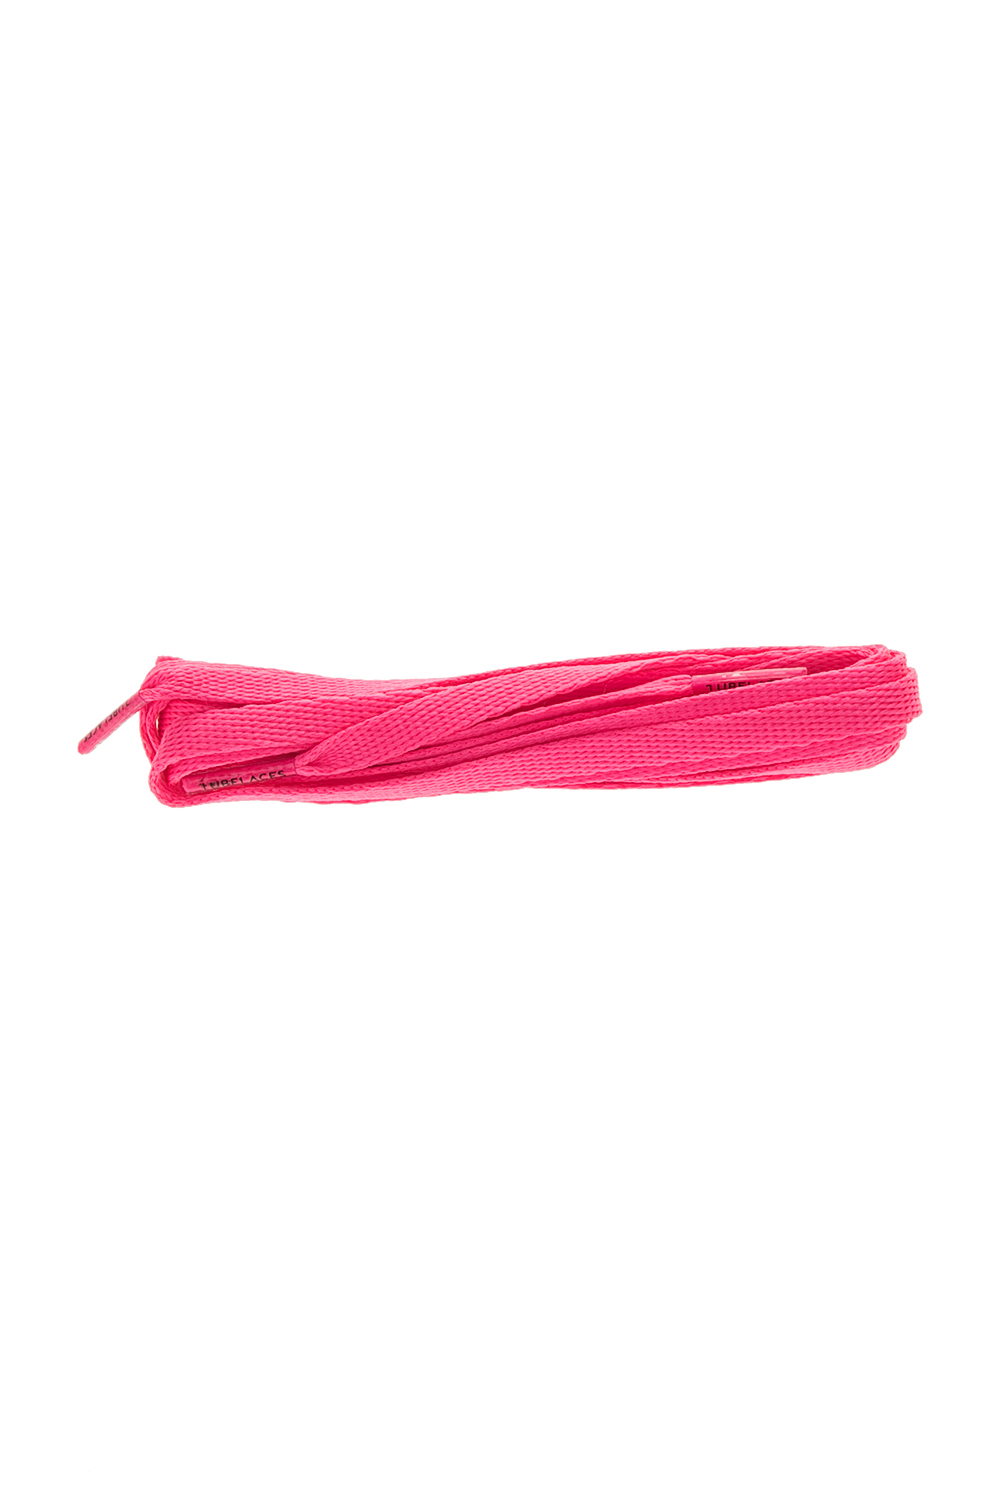 TUBELACES – Unisex κορδόνια TUBELACES WHITE FLAT ροζ